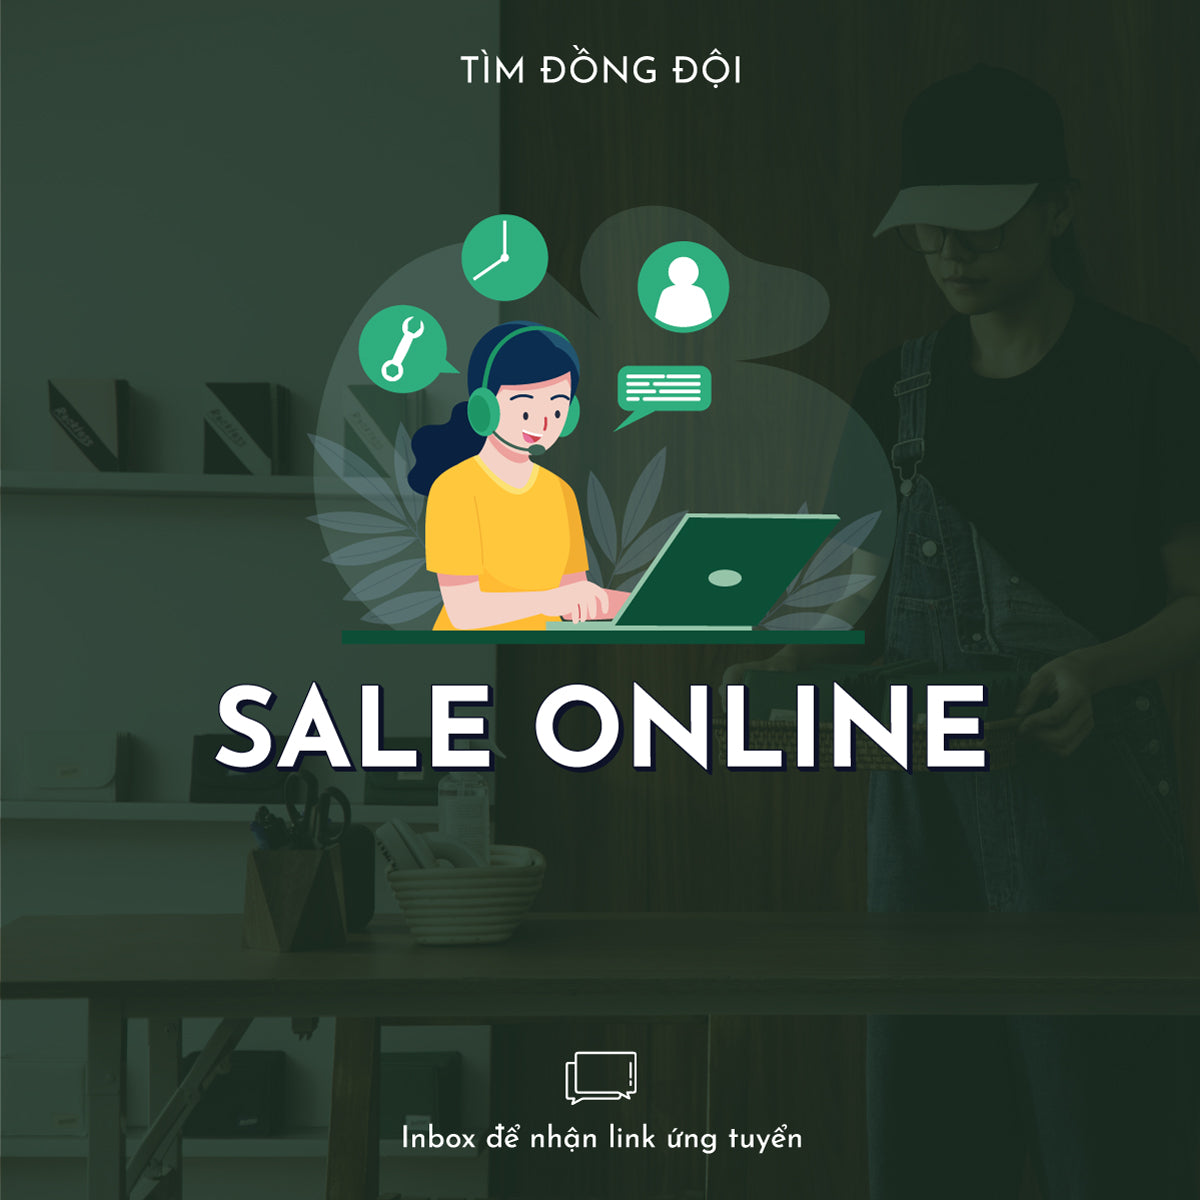 Online Sales - Ca Tối ( 17.00 - 22.00 )